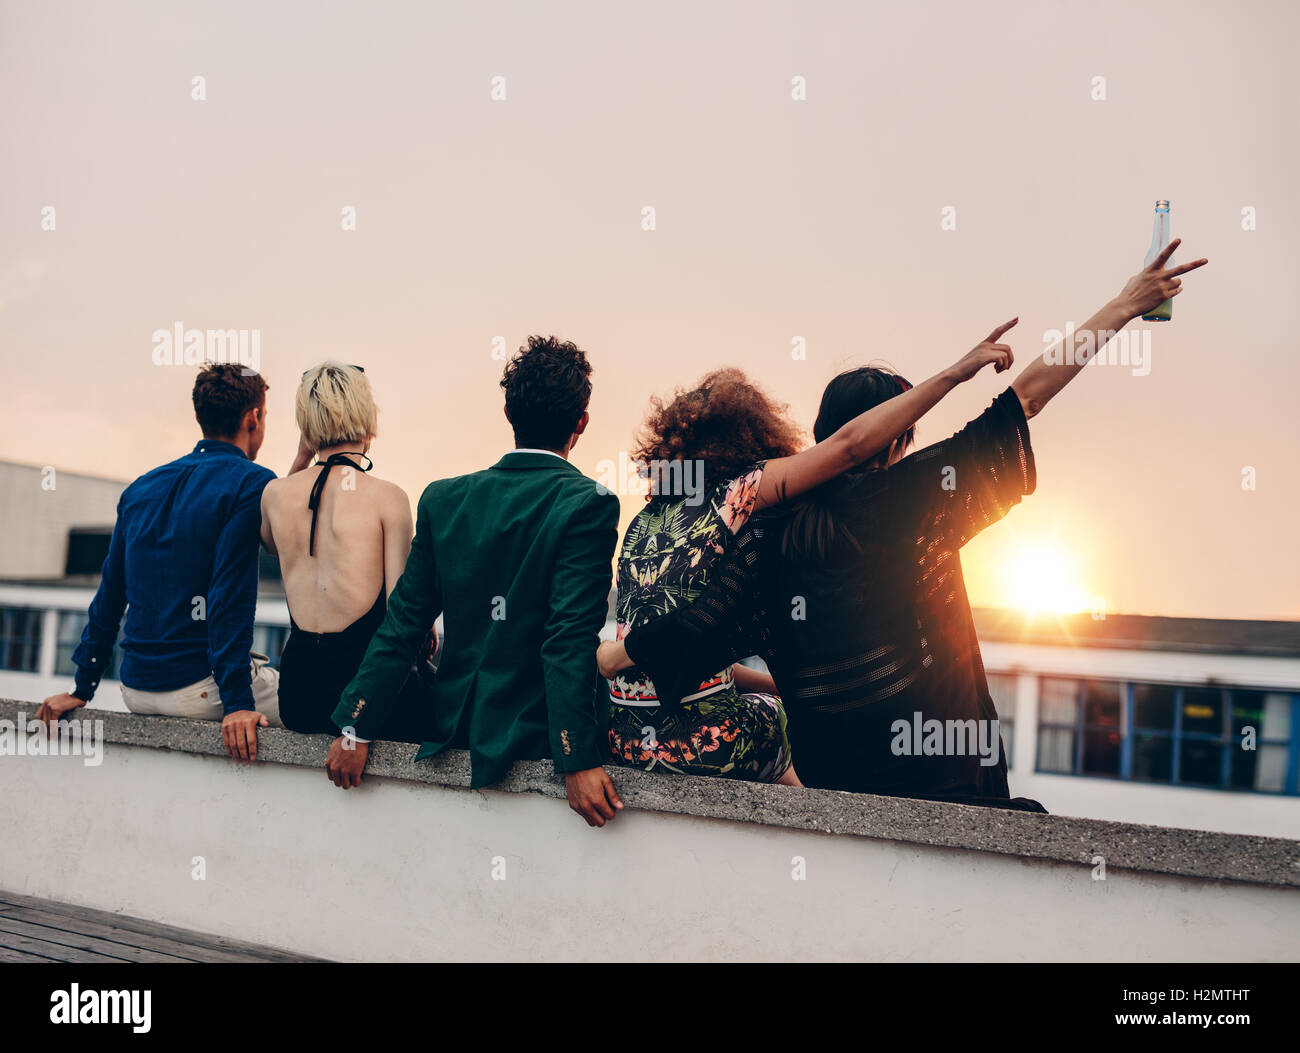 Gruppe von Freunden feiern auf Terrasse mit Getränken. Junge Männer und Frauen genießen Drinks auf der Dachterrasse bei Sonnenuntergang. Stockfoto